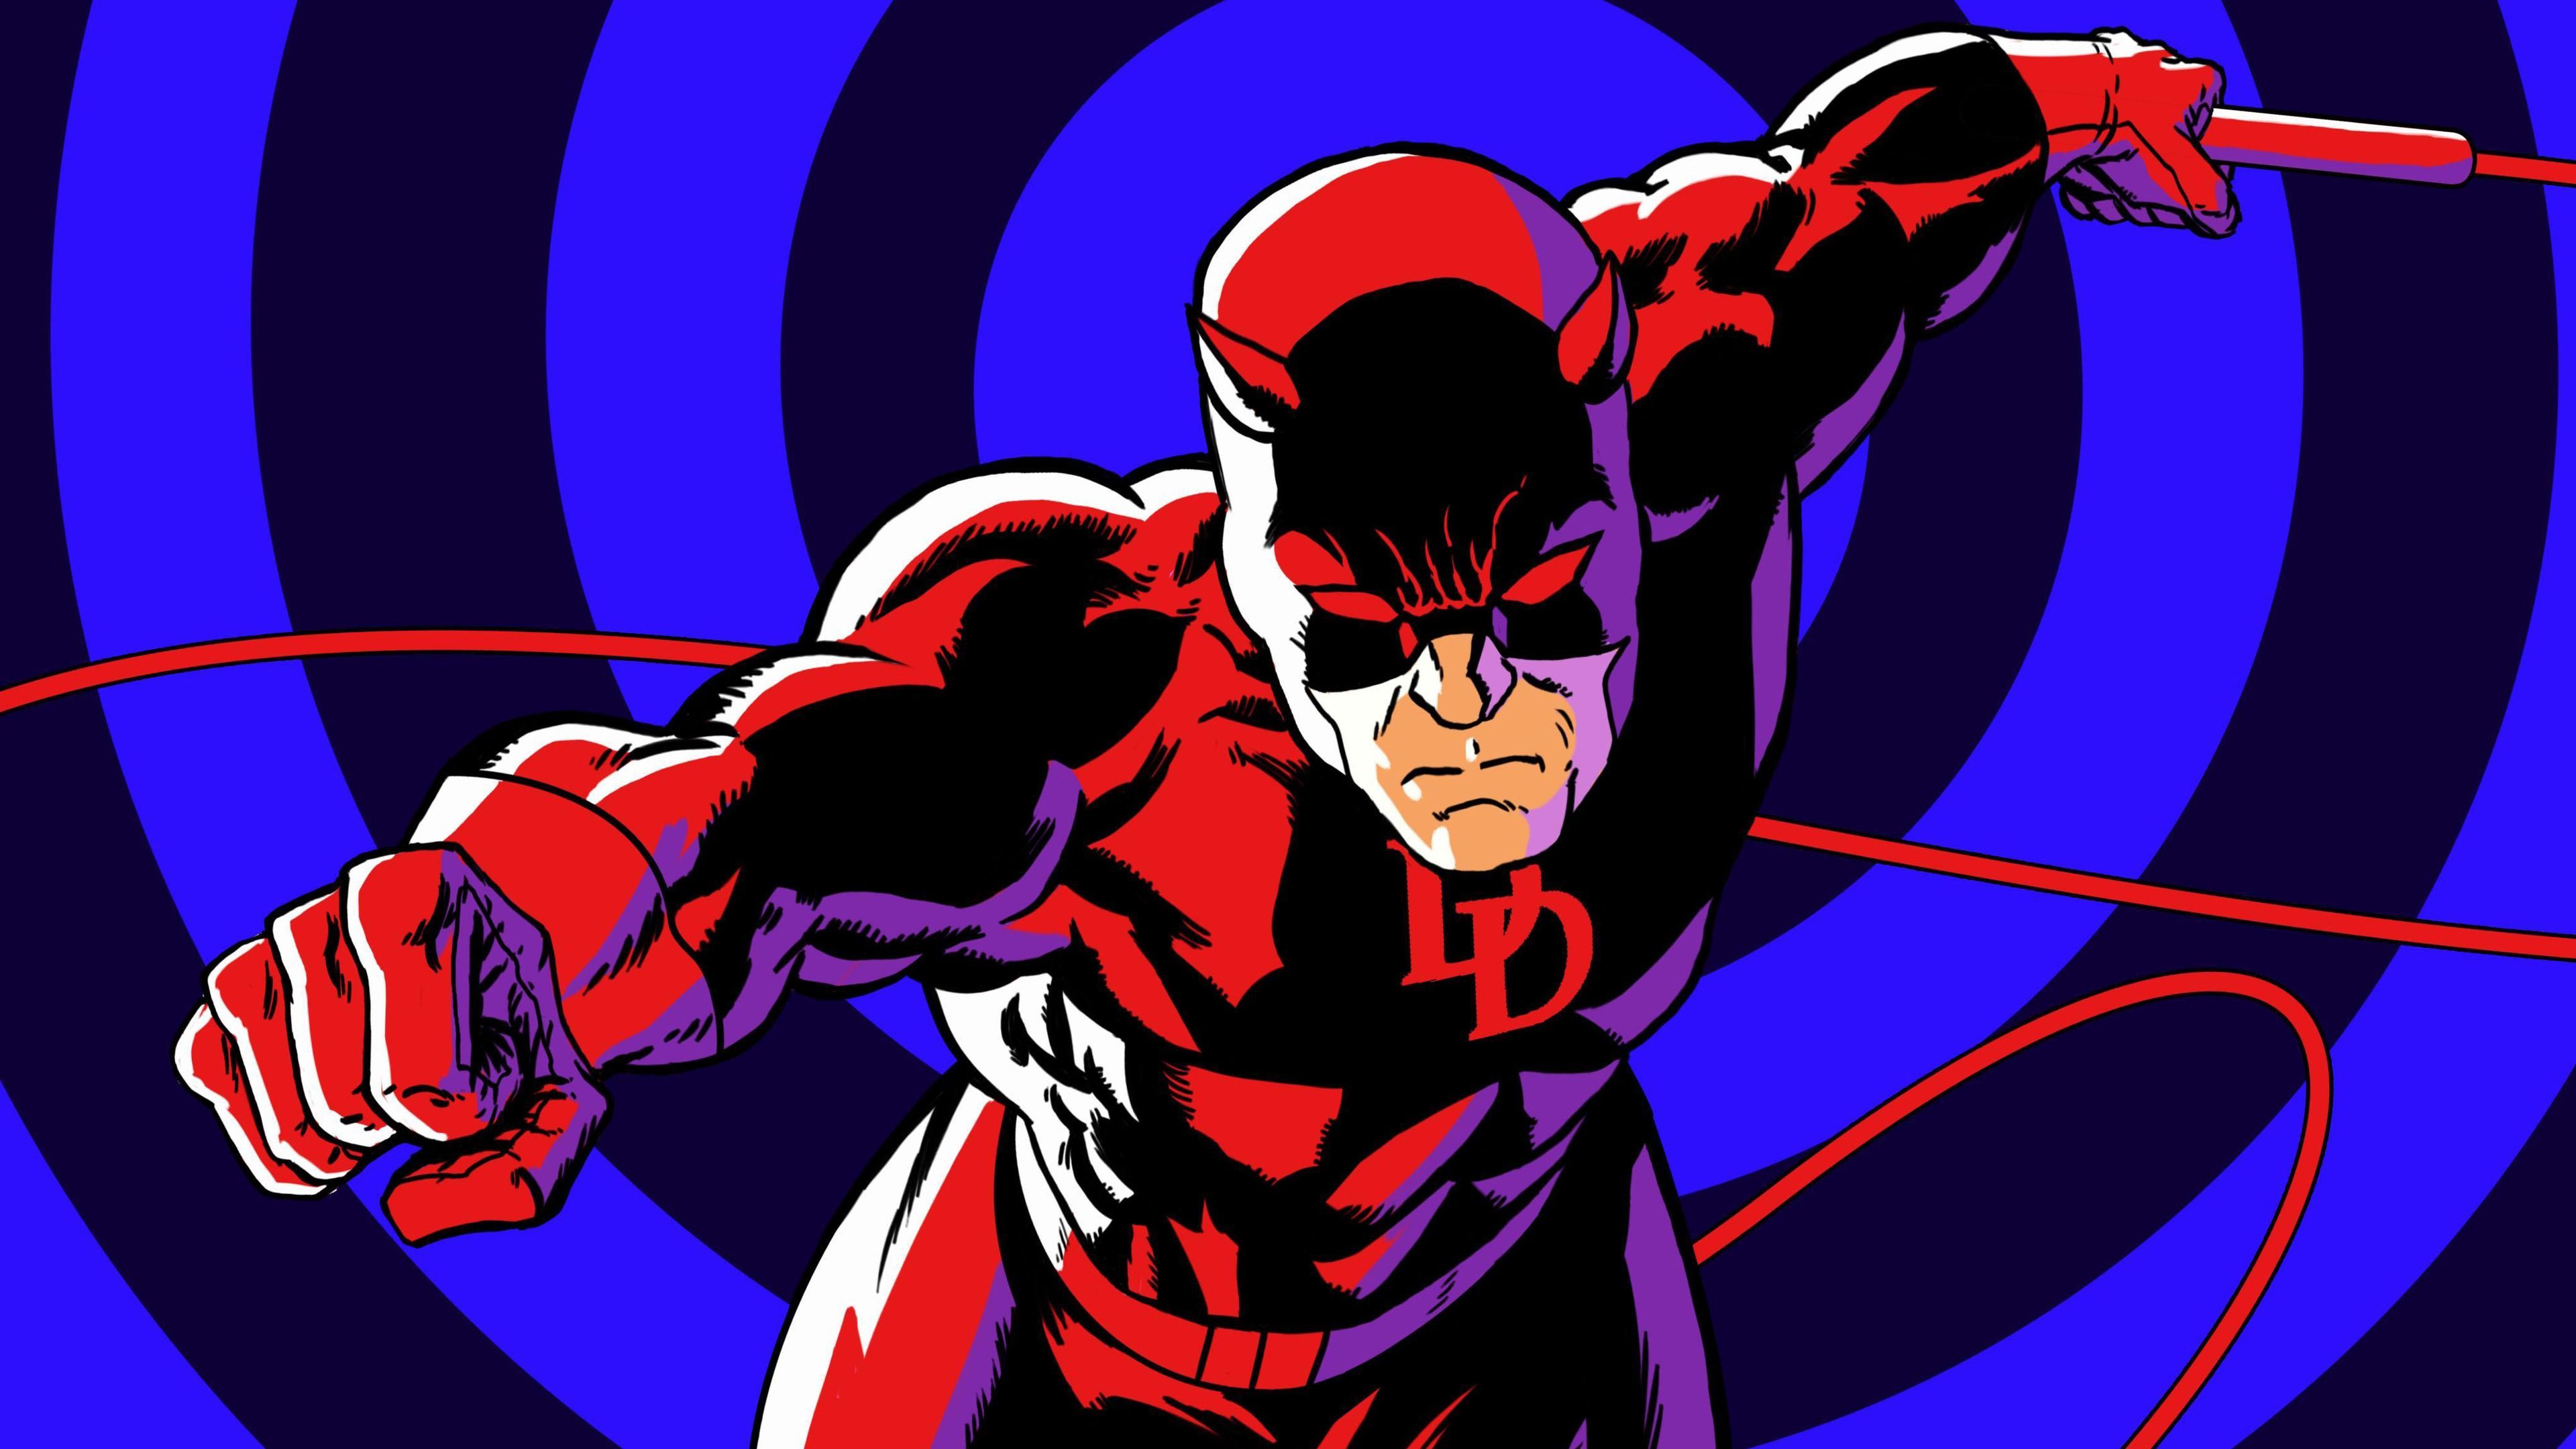 Daredevil Artworks 4k Superheroes Wallpaper, Hd Wallpaper, Daredevil Wallpaper, Artwork Wallpaper, 5k W. Daredevil Artwork, Dc Comics Artwork, Daredevil Comic